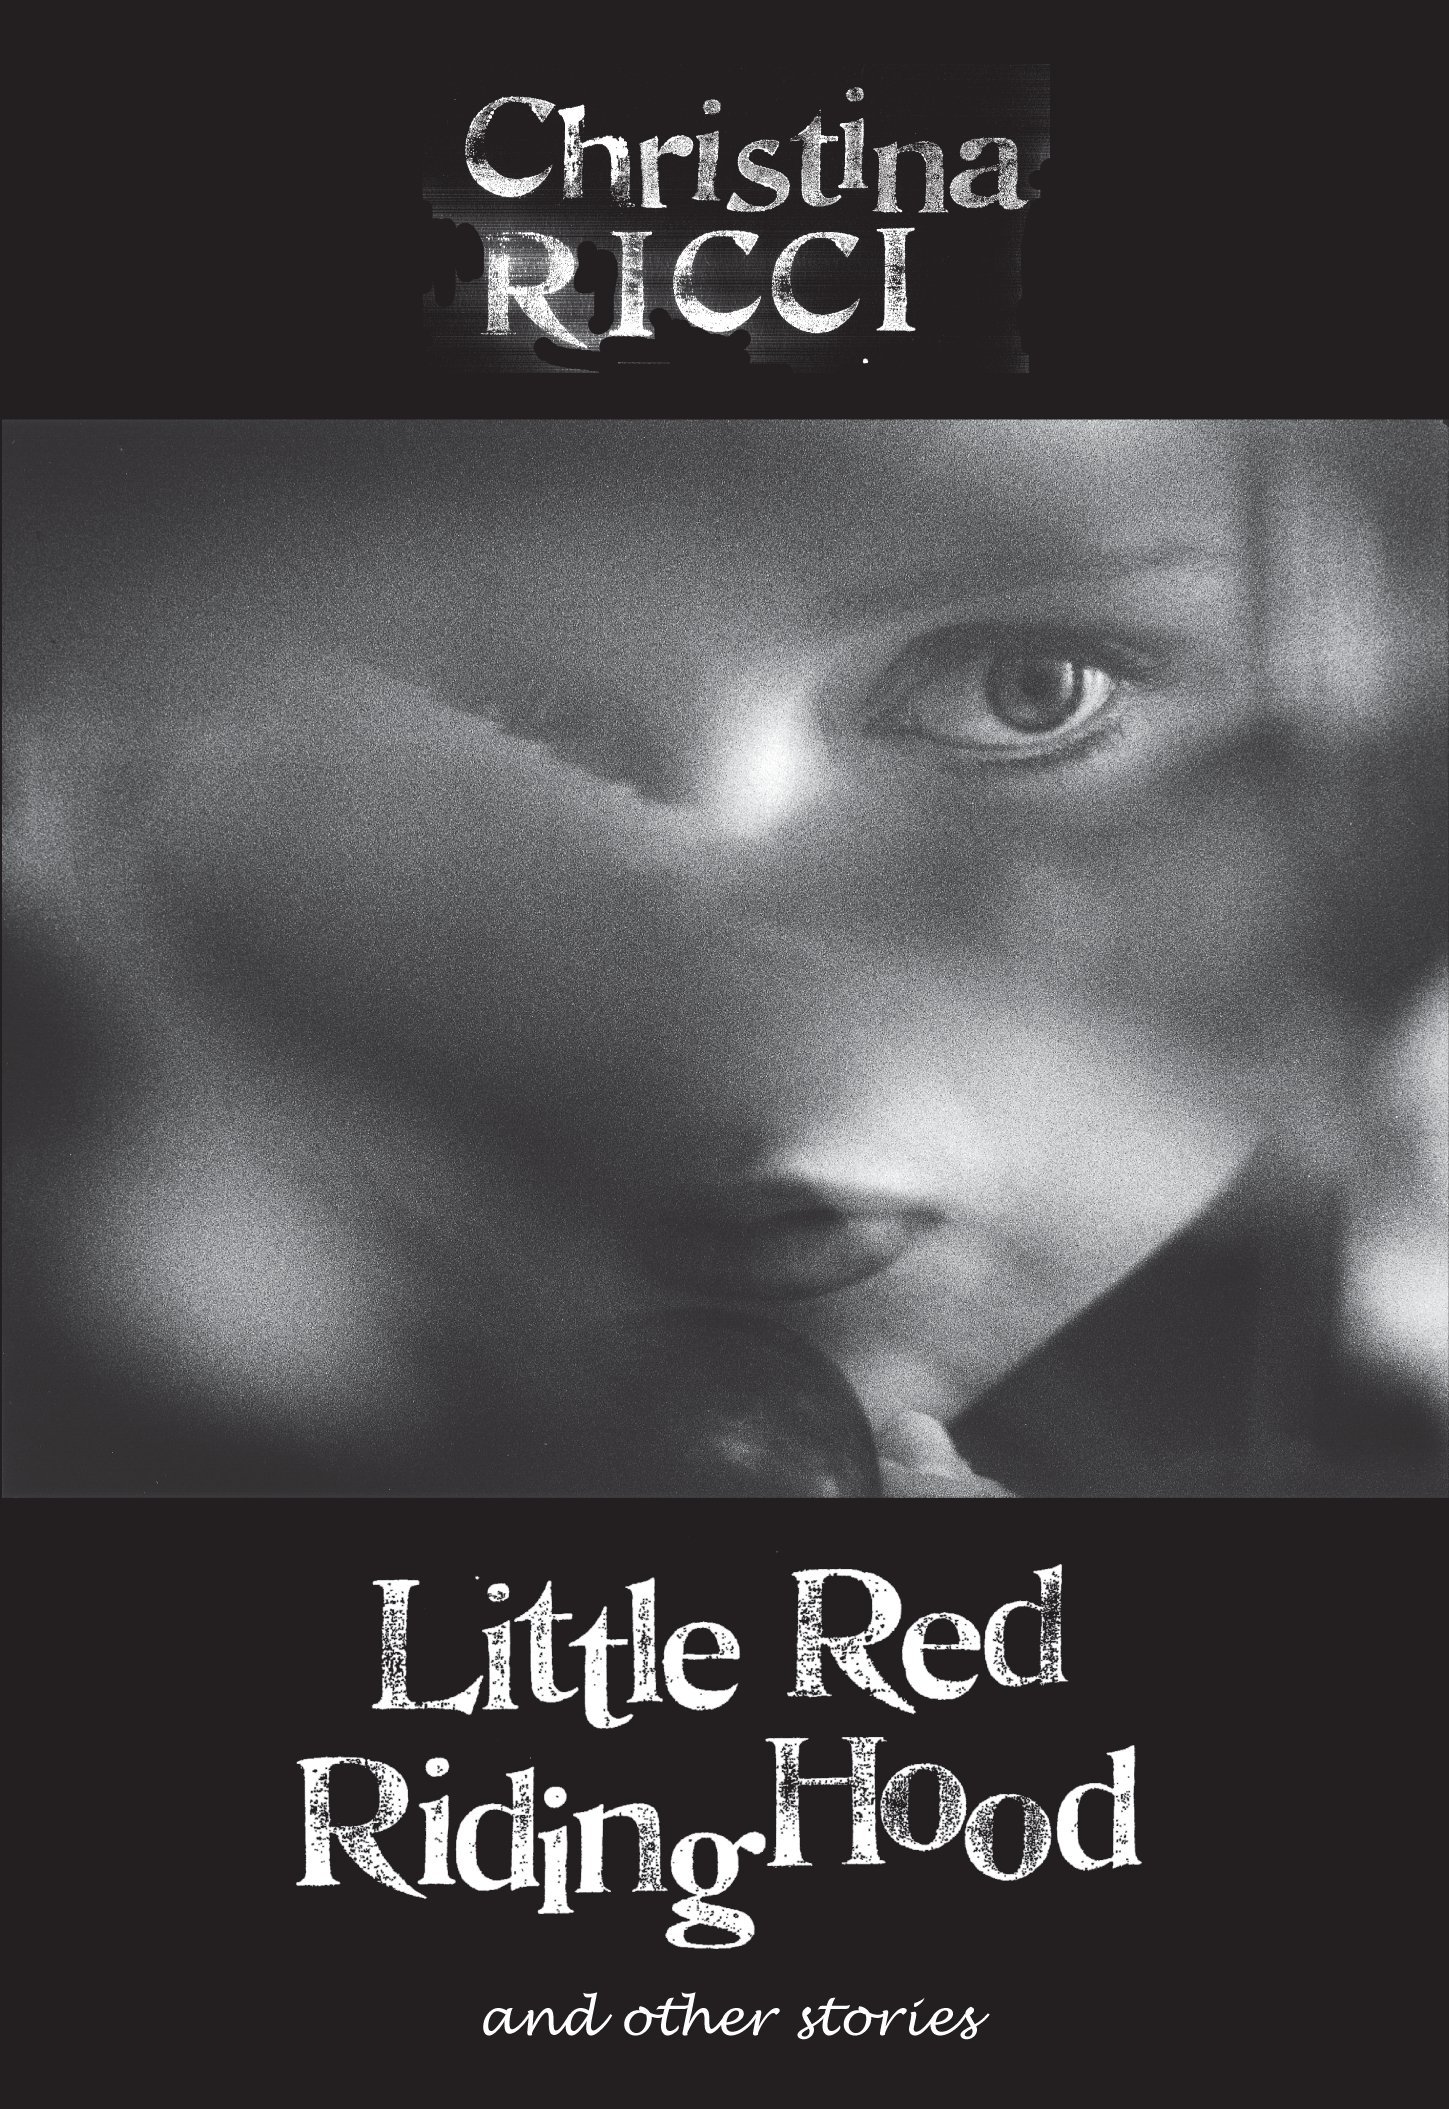 Little Red Riding Hood (1997) Screenshot 1 